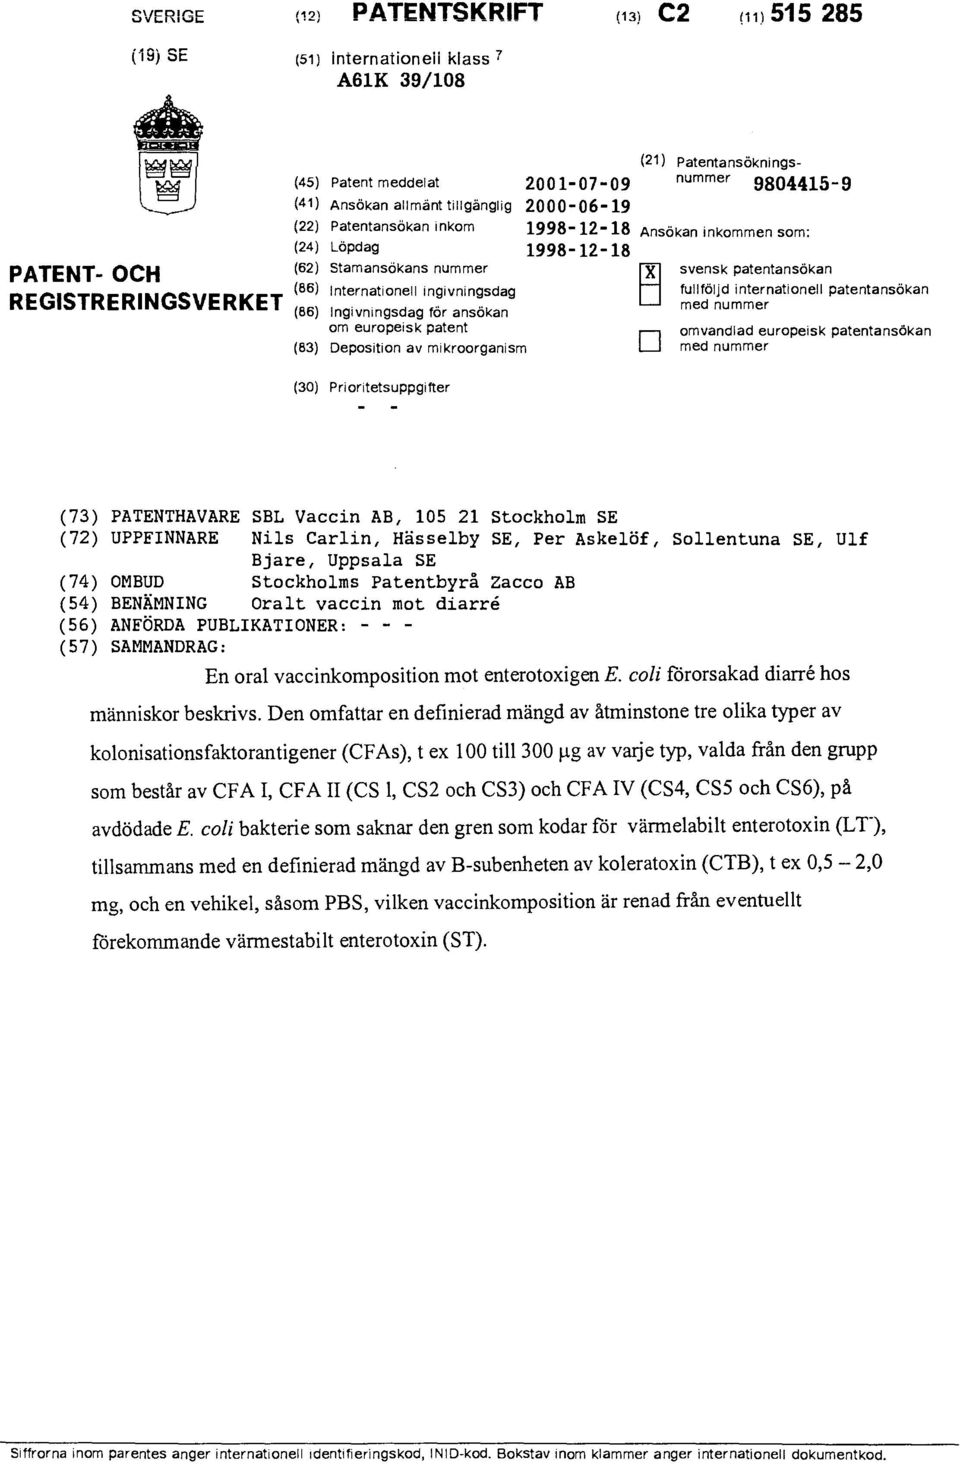 ingivningsdag fullföljd (86) Ingivningsdag för ansökan om europeisk patent (83) Deposition av mikroorganism I internationell patentansökan med nummer omvandlad europeisk patentansökan med nummer (30)